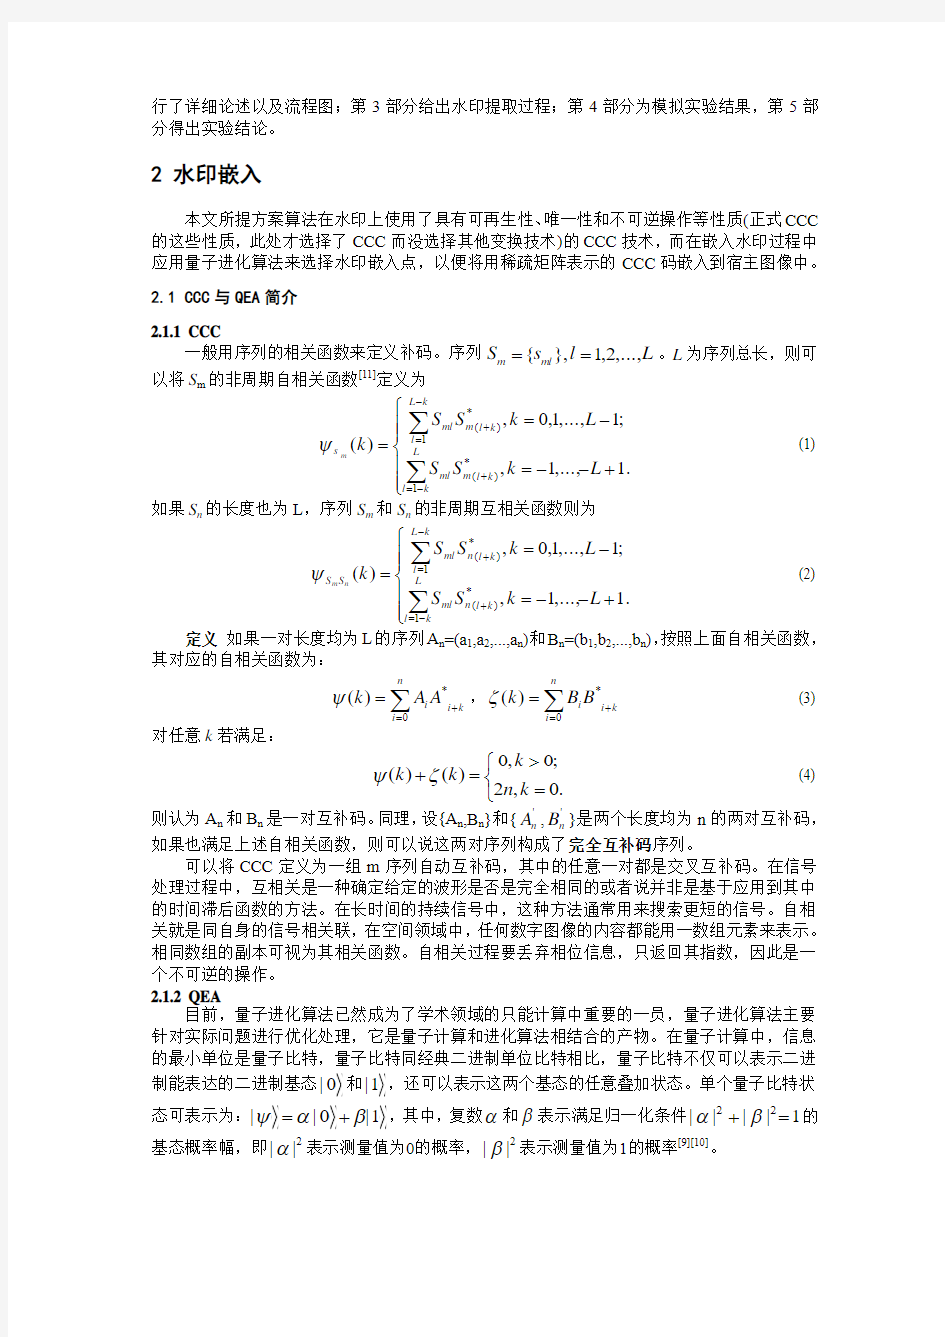 中南民族大学 计算机科学学院 基于完全互补码与量子进化算法的数字水印方案——蒋天发 牟群刚